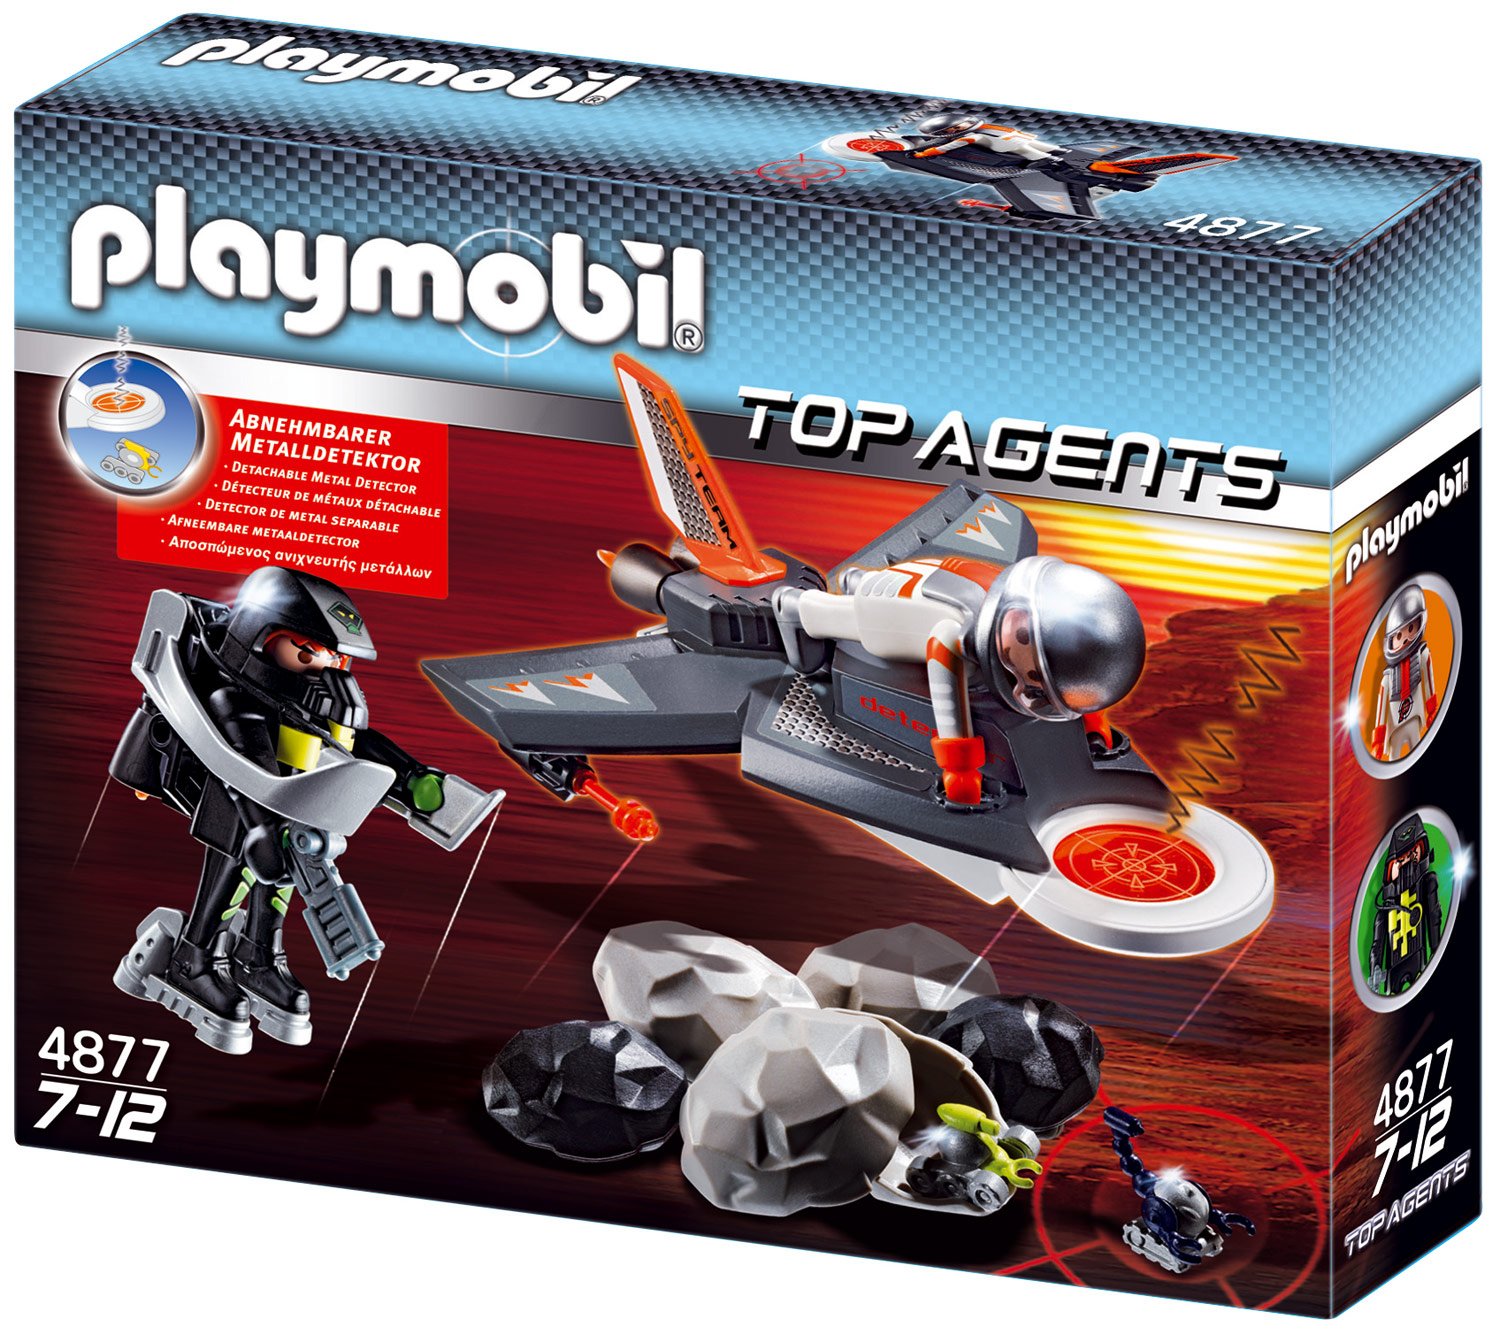 Playmobil Secret Agent Detection Jet